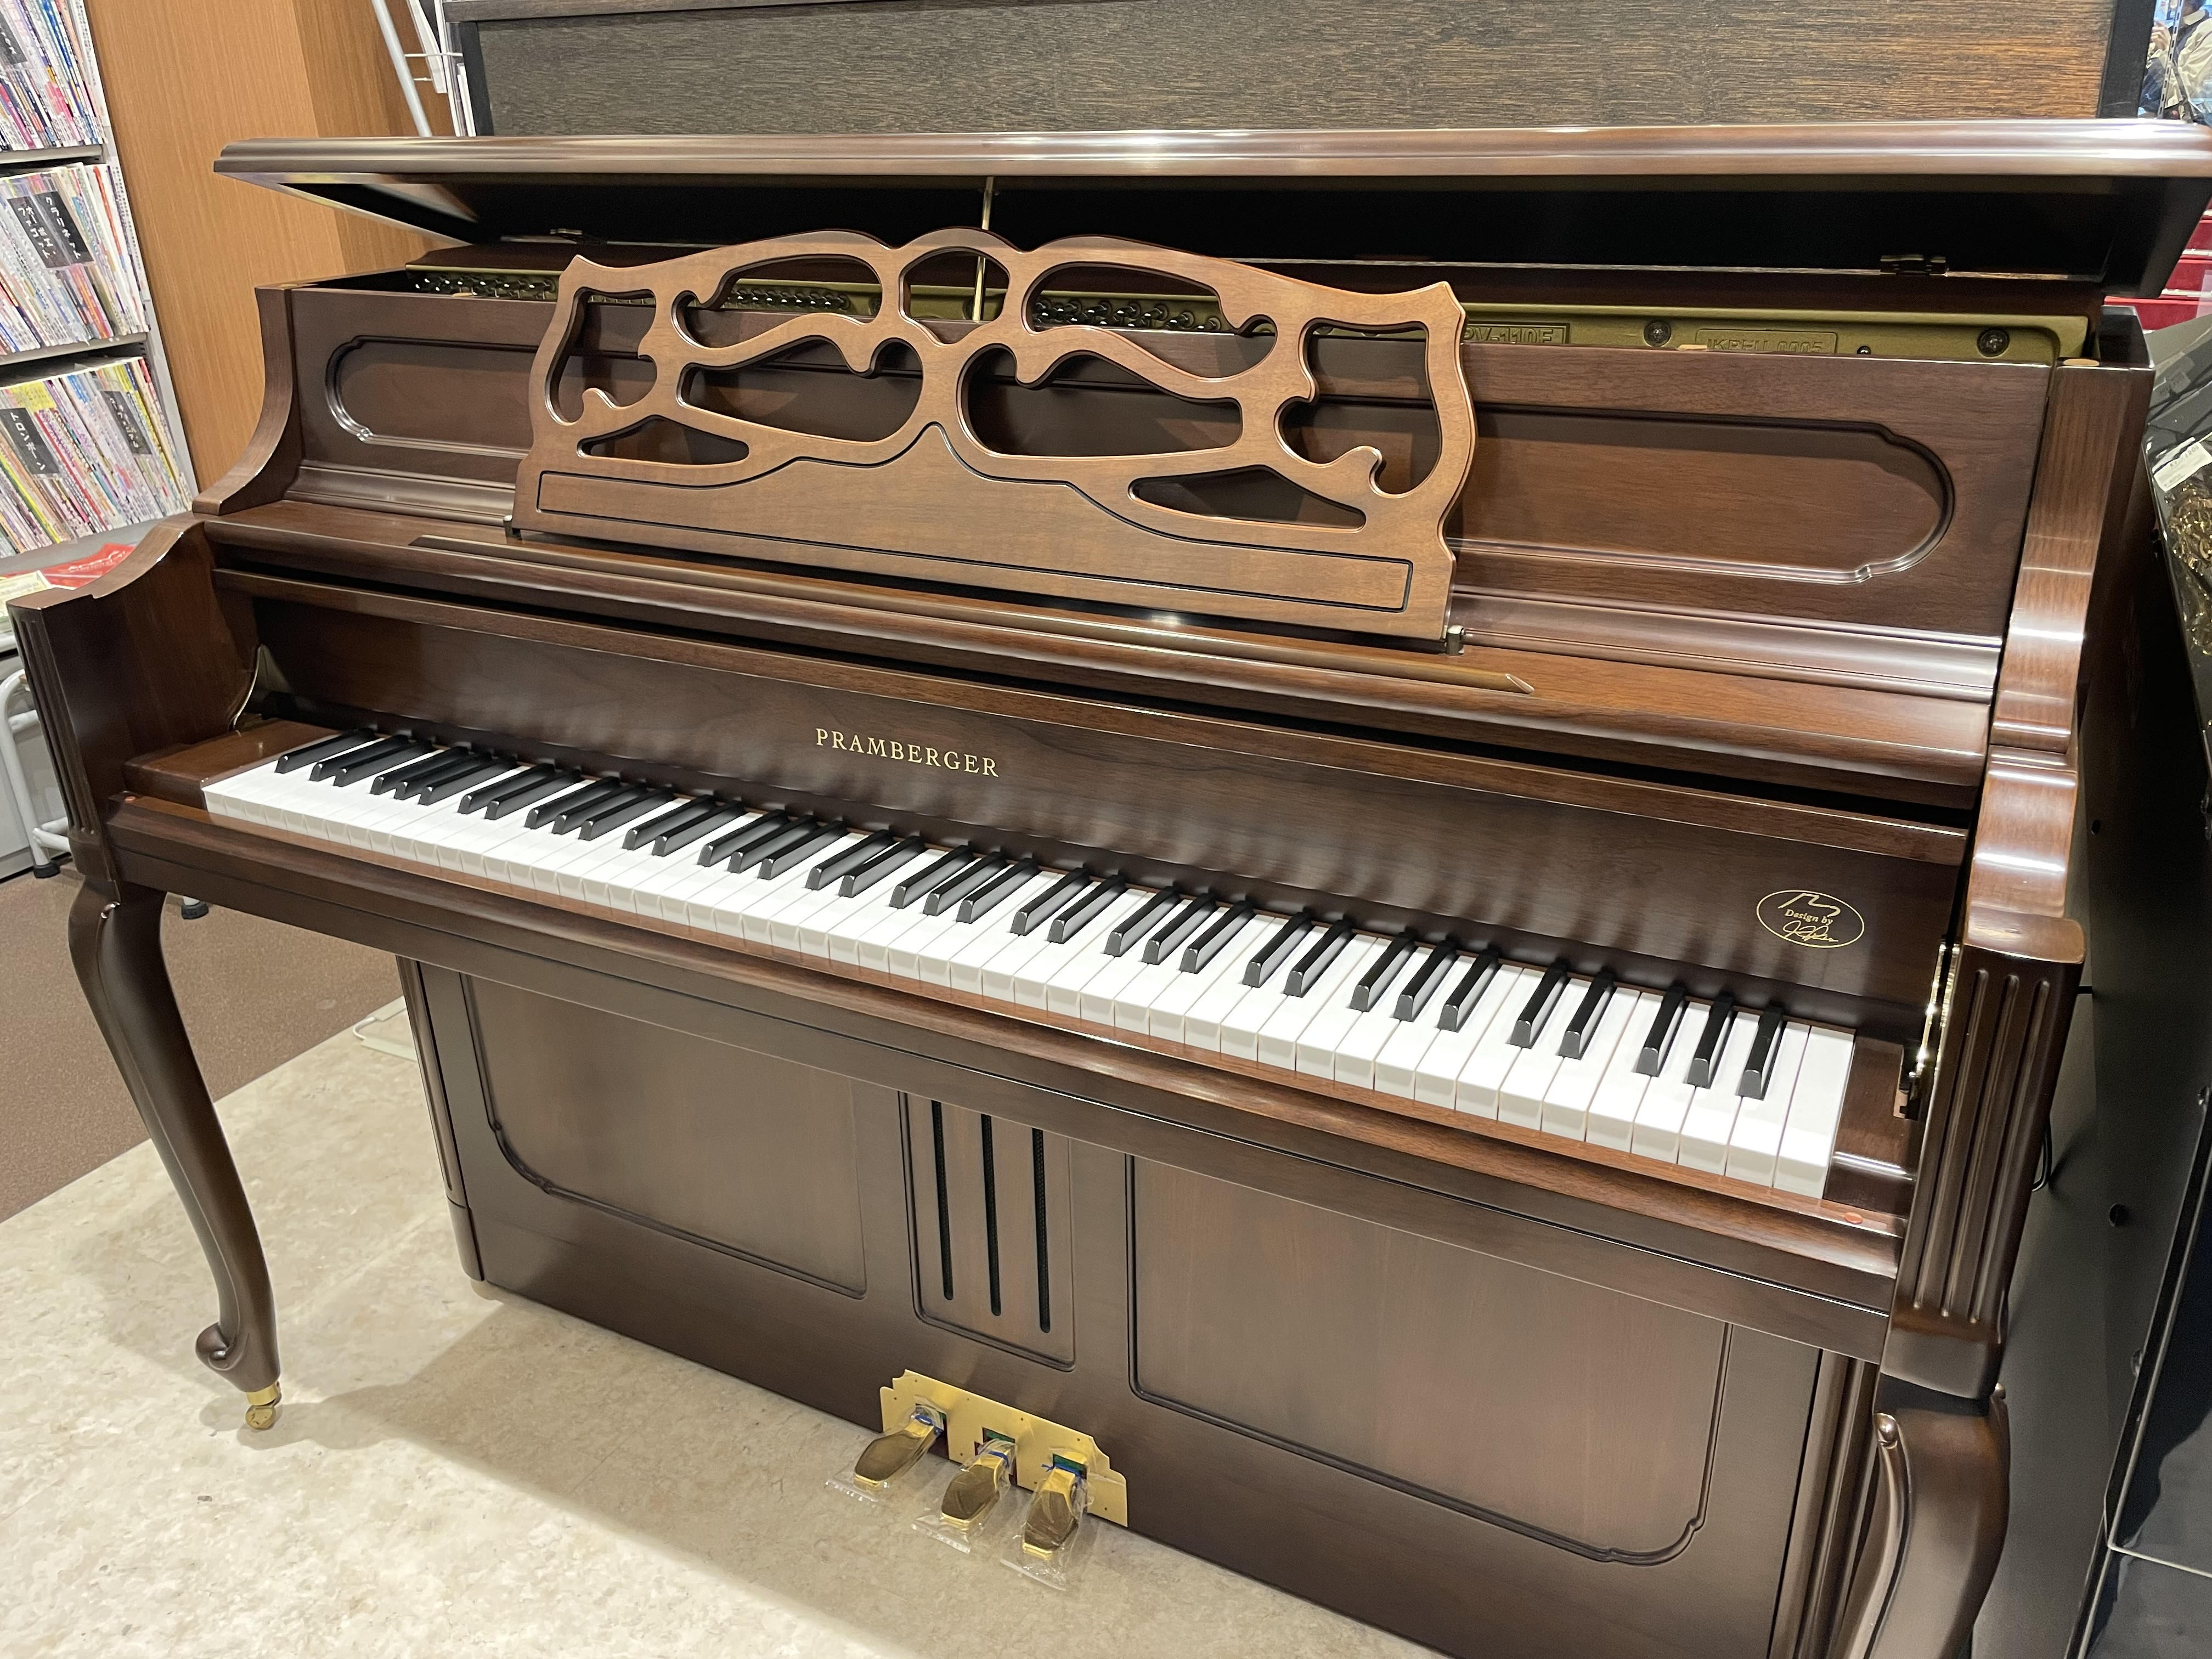 こちらはPRAMBERGER(プレンバーガー)のアップライトピアノ「PV110F」の詳細をまとめた記事となります。ただいま島村楽器イオンモール広島祗園店に展示中です。詳しくはアップライトピアノ担当田野原までお気軽にお問い合わせください。 CONTENTSイオンモール広島祇園店　展示アップライトピアノ […]